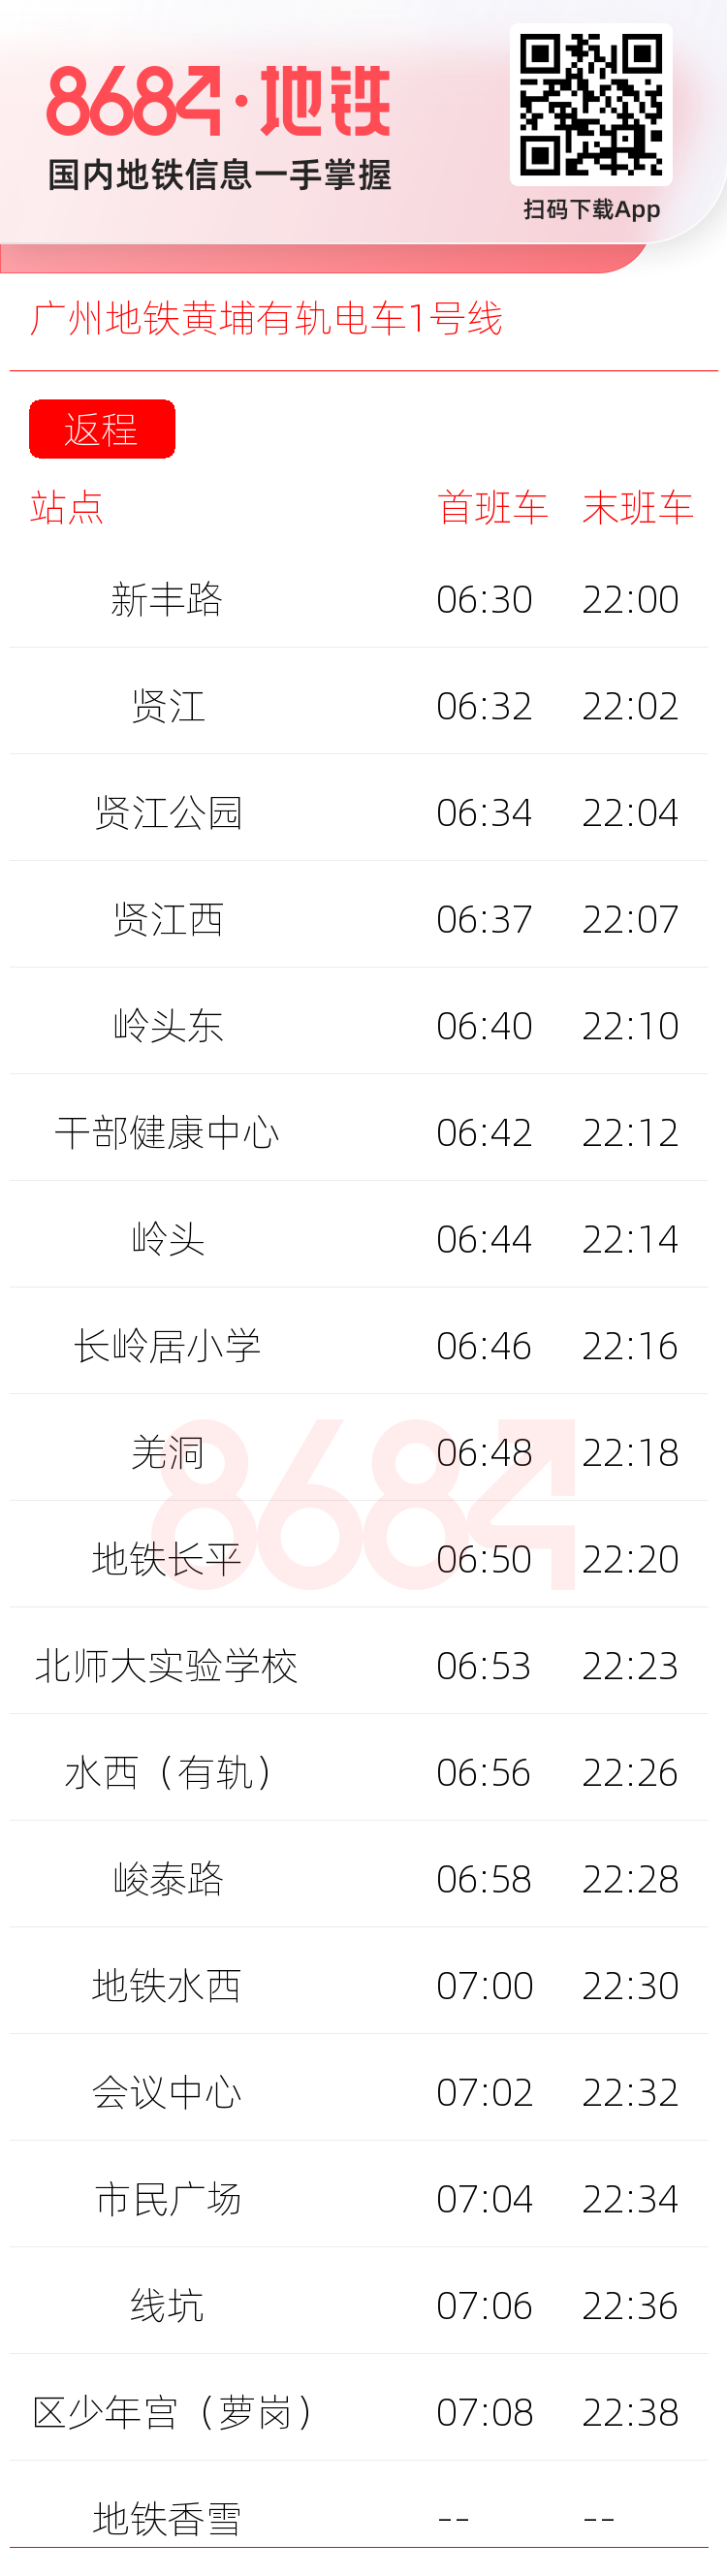 广州地铁黄埔有轨电车1号线运营时间表